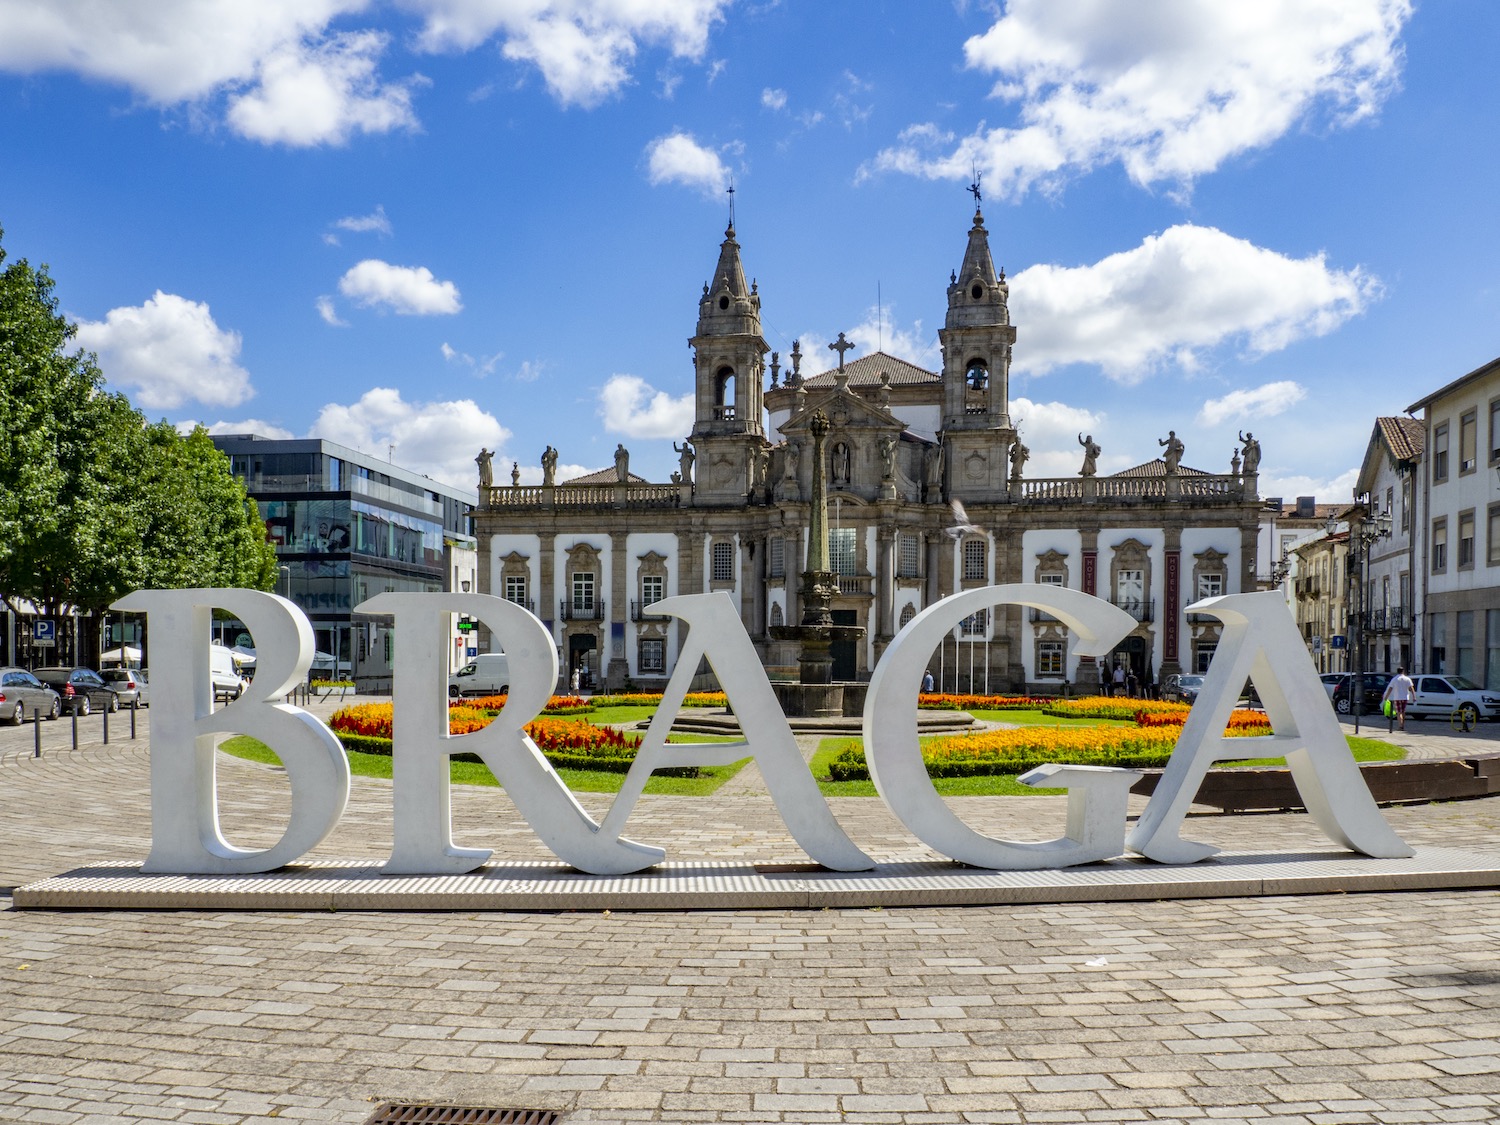 Isla de Alcatraz Señal Están familiarizados Todo sobre Braga en Portugal - Opinión, consejos, guía de viaje y más!